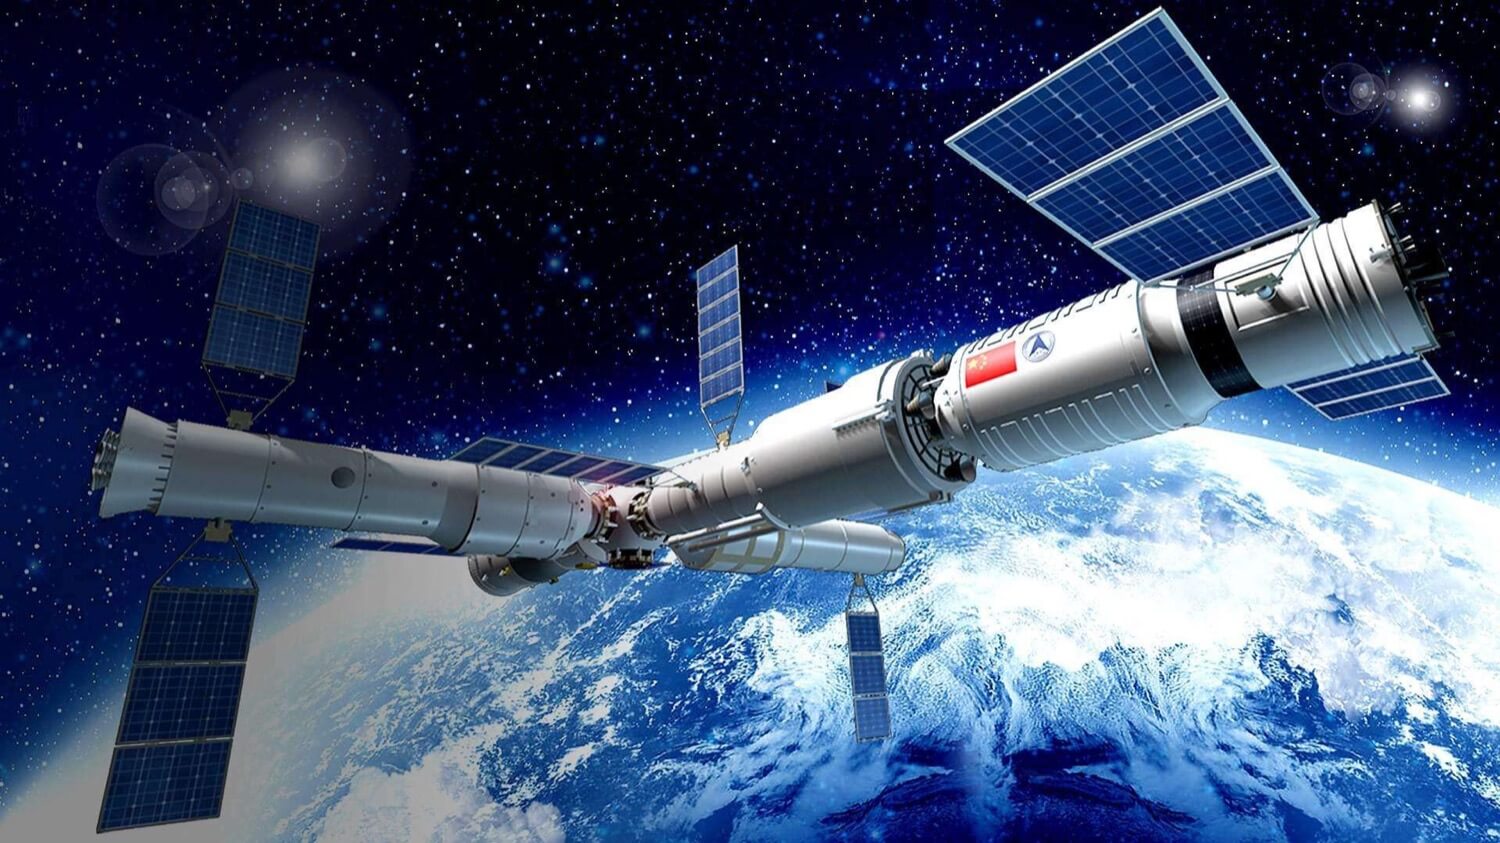 Kina är att bygga en ny international space station 2022